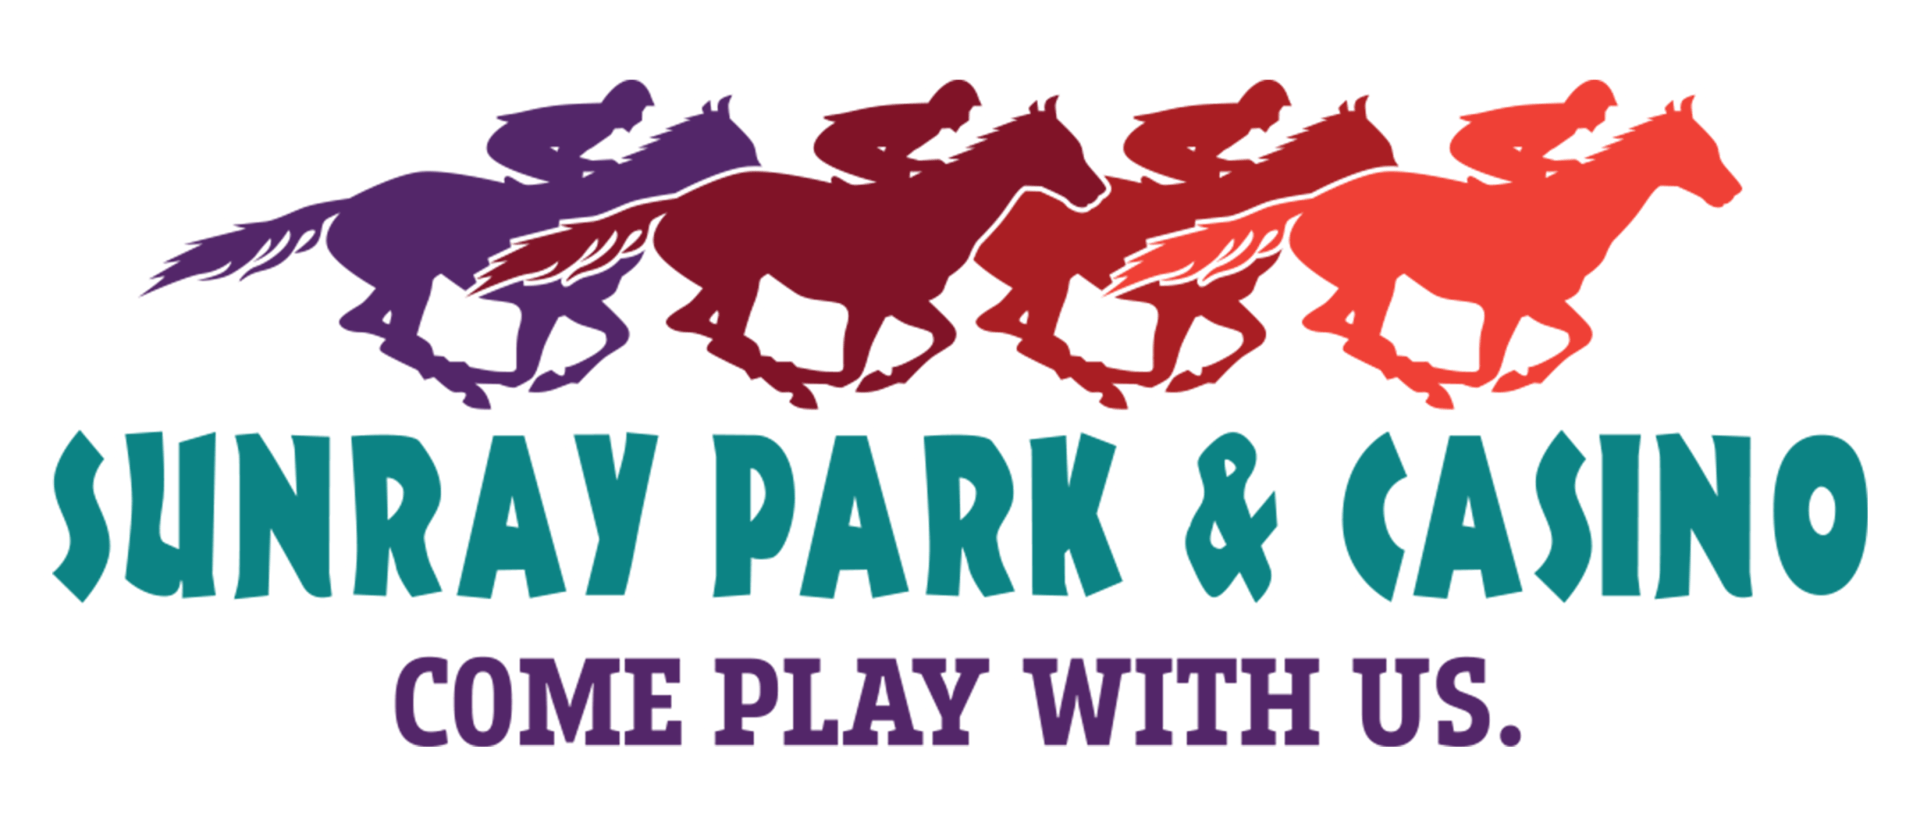 Sunray Park and Casino logo